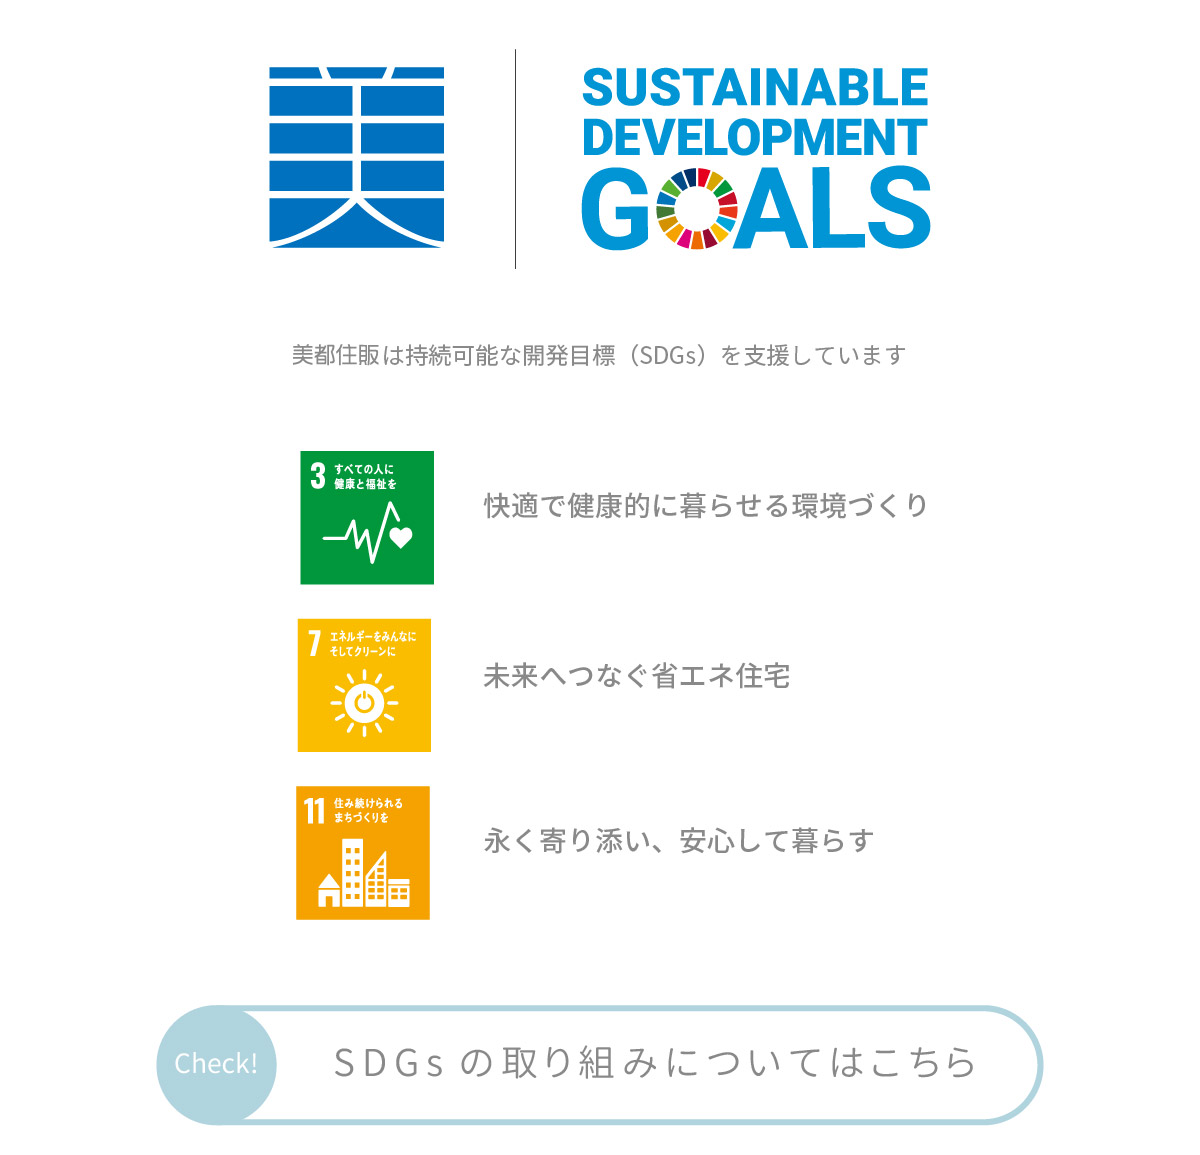 美都住販　空気　キレイ　住まい　Sustainable Development Goals 美都住販はは持続可能な開発目標（SDGs）を支援しています　3すべての人に健康と福祉を　快適で健康的に暮らせる環境づくり　7エネルギーをみんなにそしてクリーンに　未来へつなぐ省エネ住宅　11住みつづけられるまちづくりを　永く寄り添い、安心して暮らす　Check！　SDGsの取り組みについてはこちら